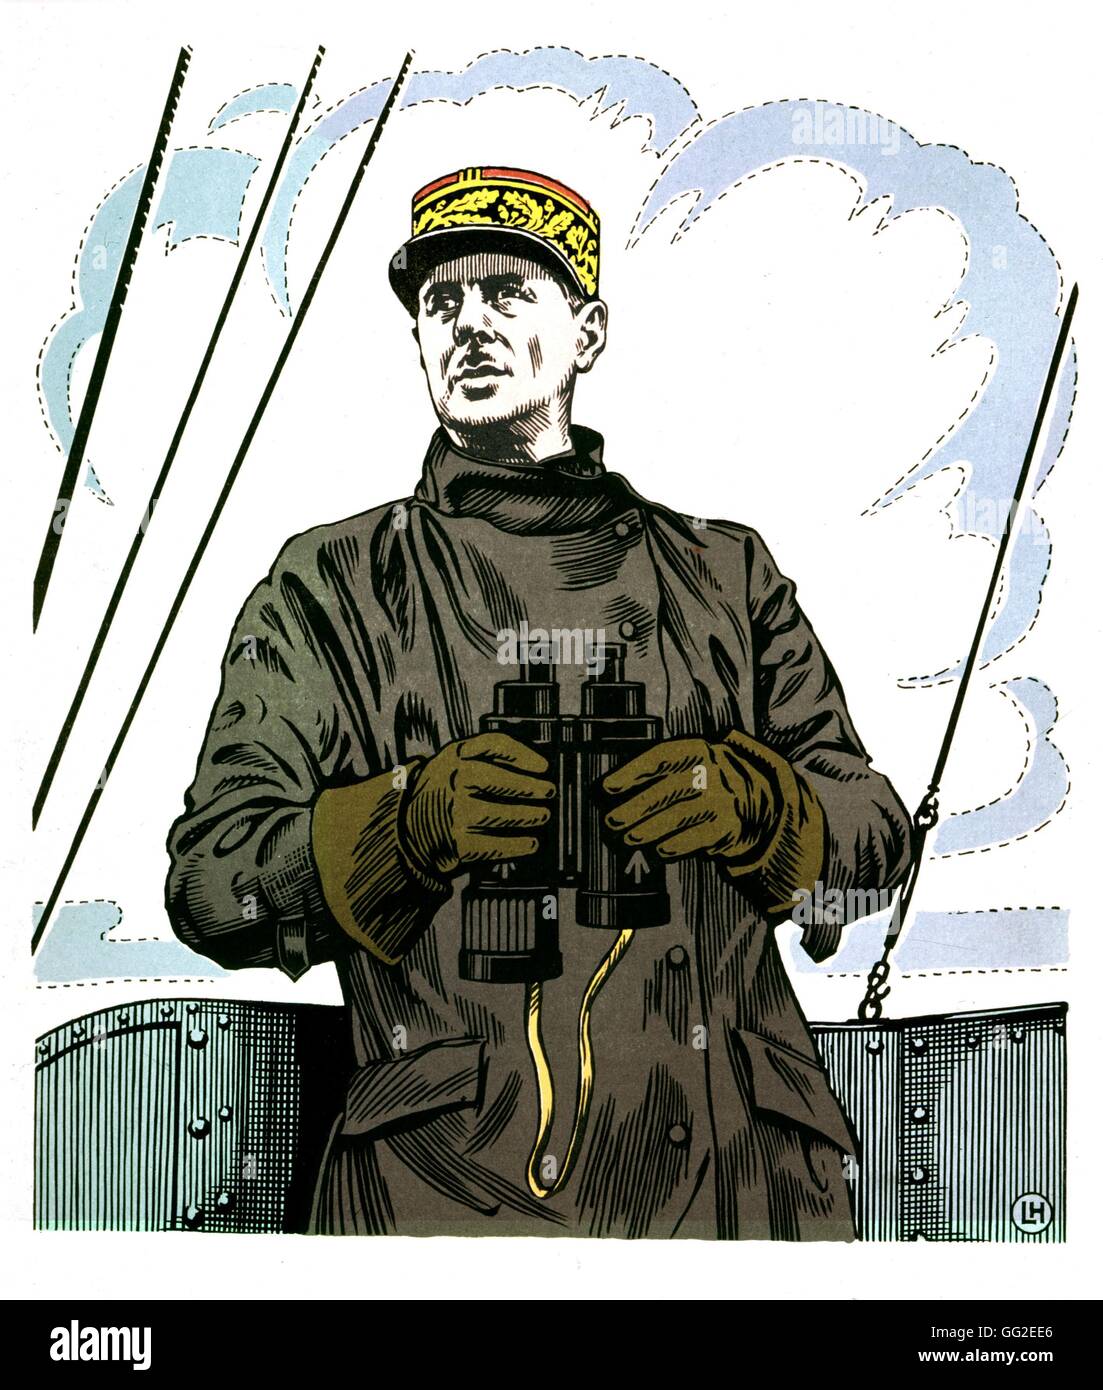 L'imagerie populaire : De Gaulle en 1941 1941 France, Seconde Guerre mondiale Guerre mondiale Banque D'Images